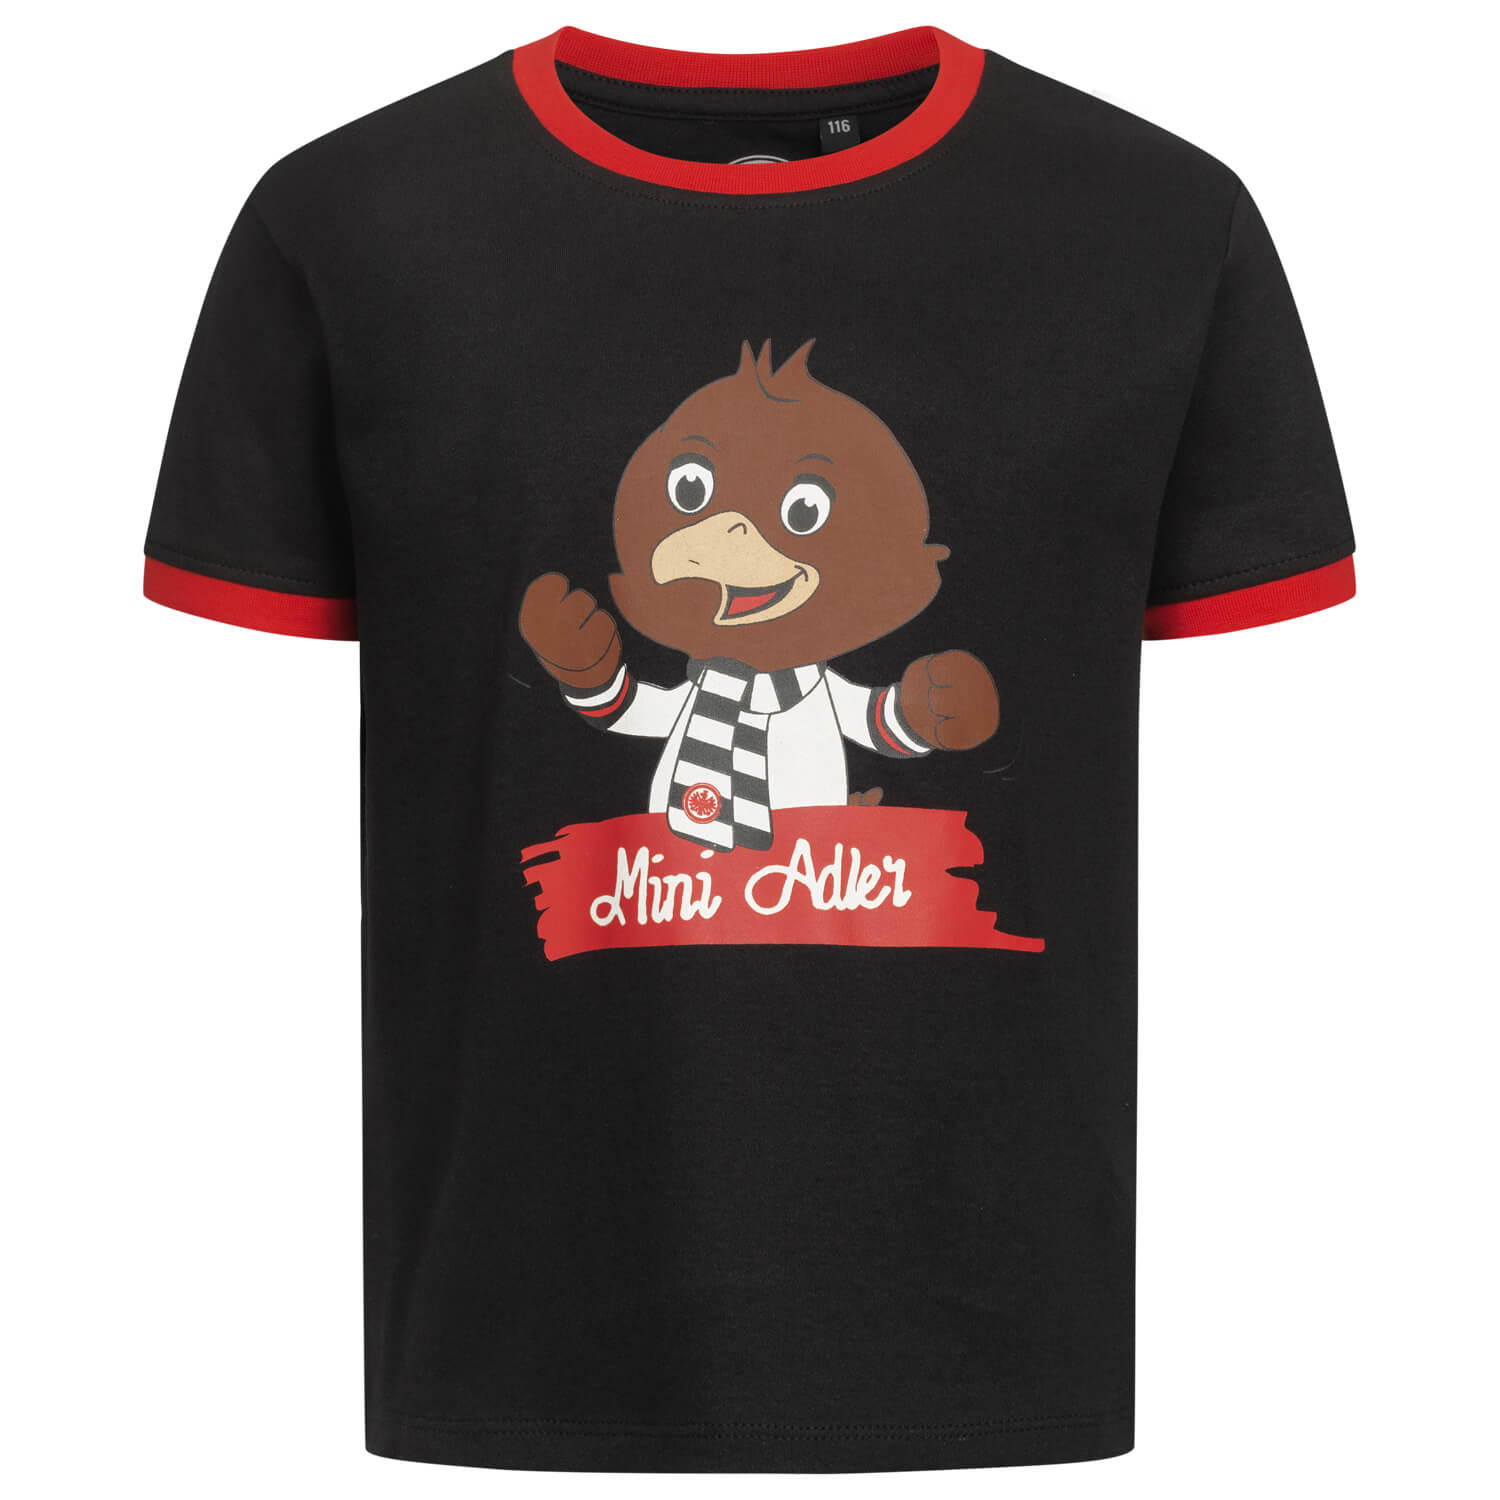 Bild 1: Kids T-Shirt Mini Adler black